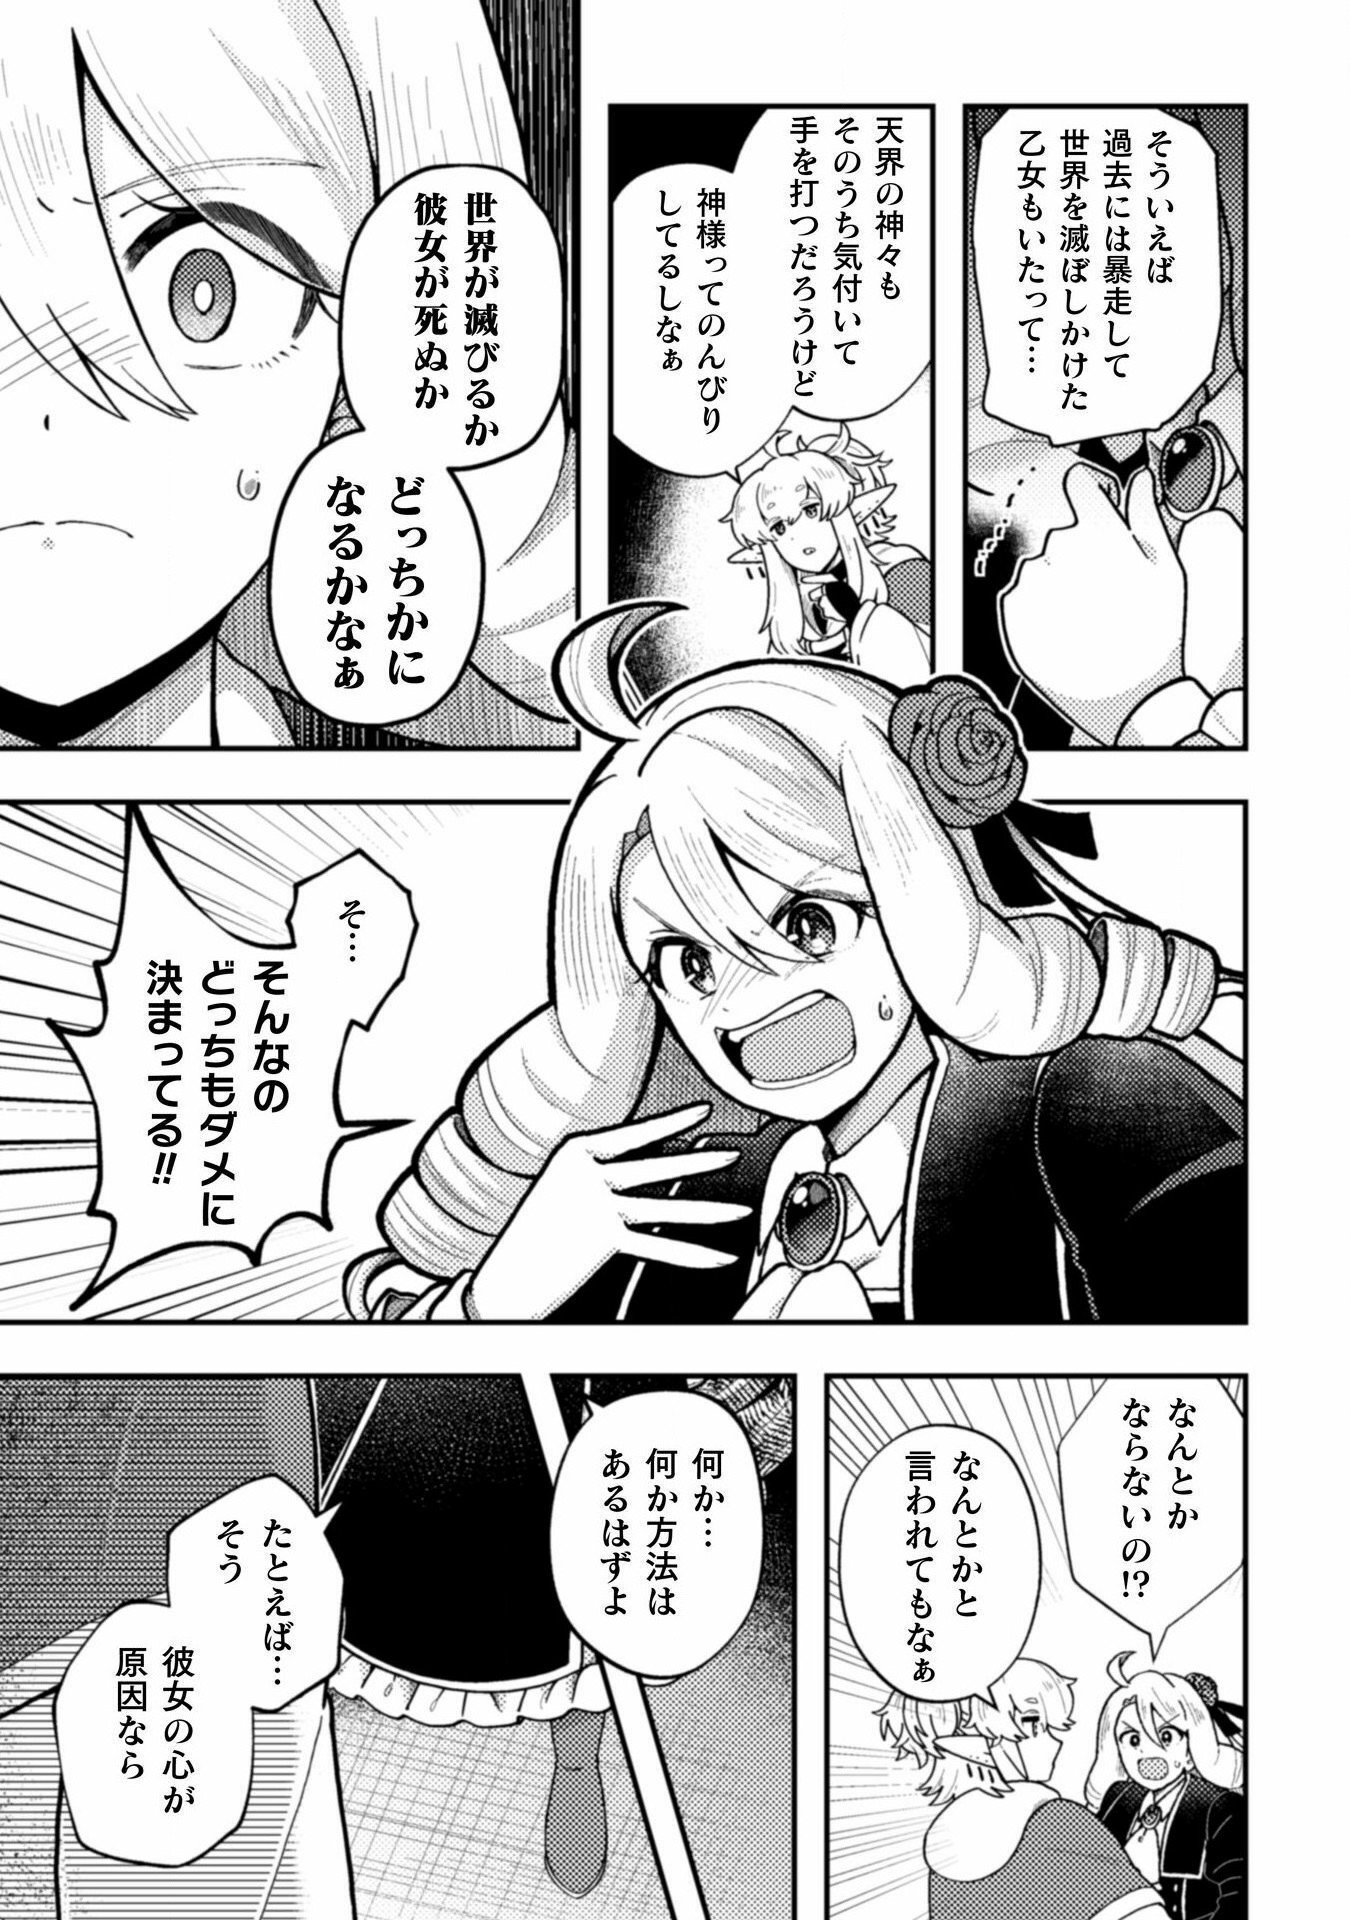 Otome Game no Akuyaku Reijou ni Tensei shitakedo Follower ga Fukyoushiteta Chisiki shikanai - Chapter 22 - Page 5